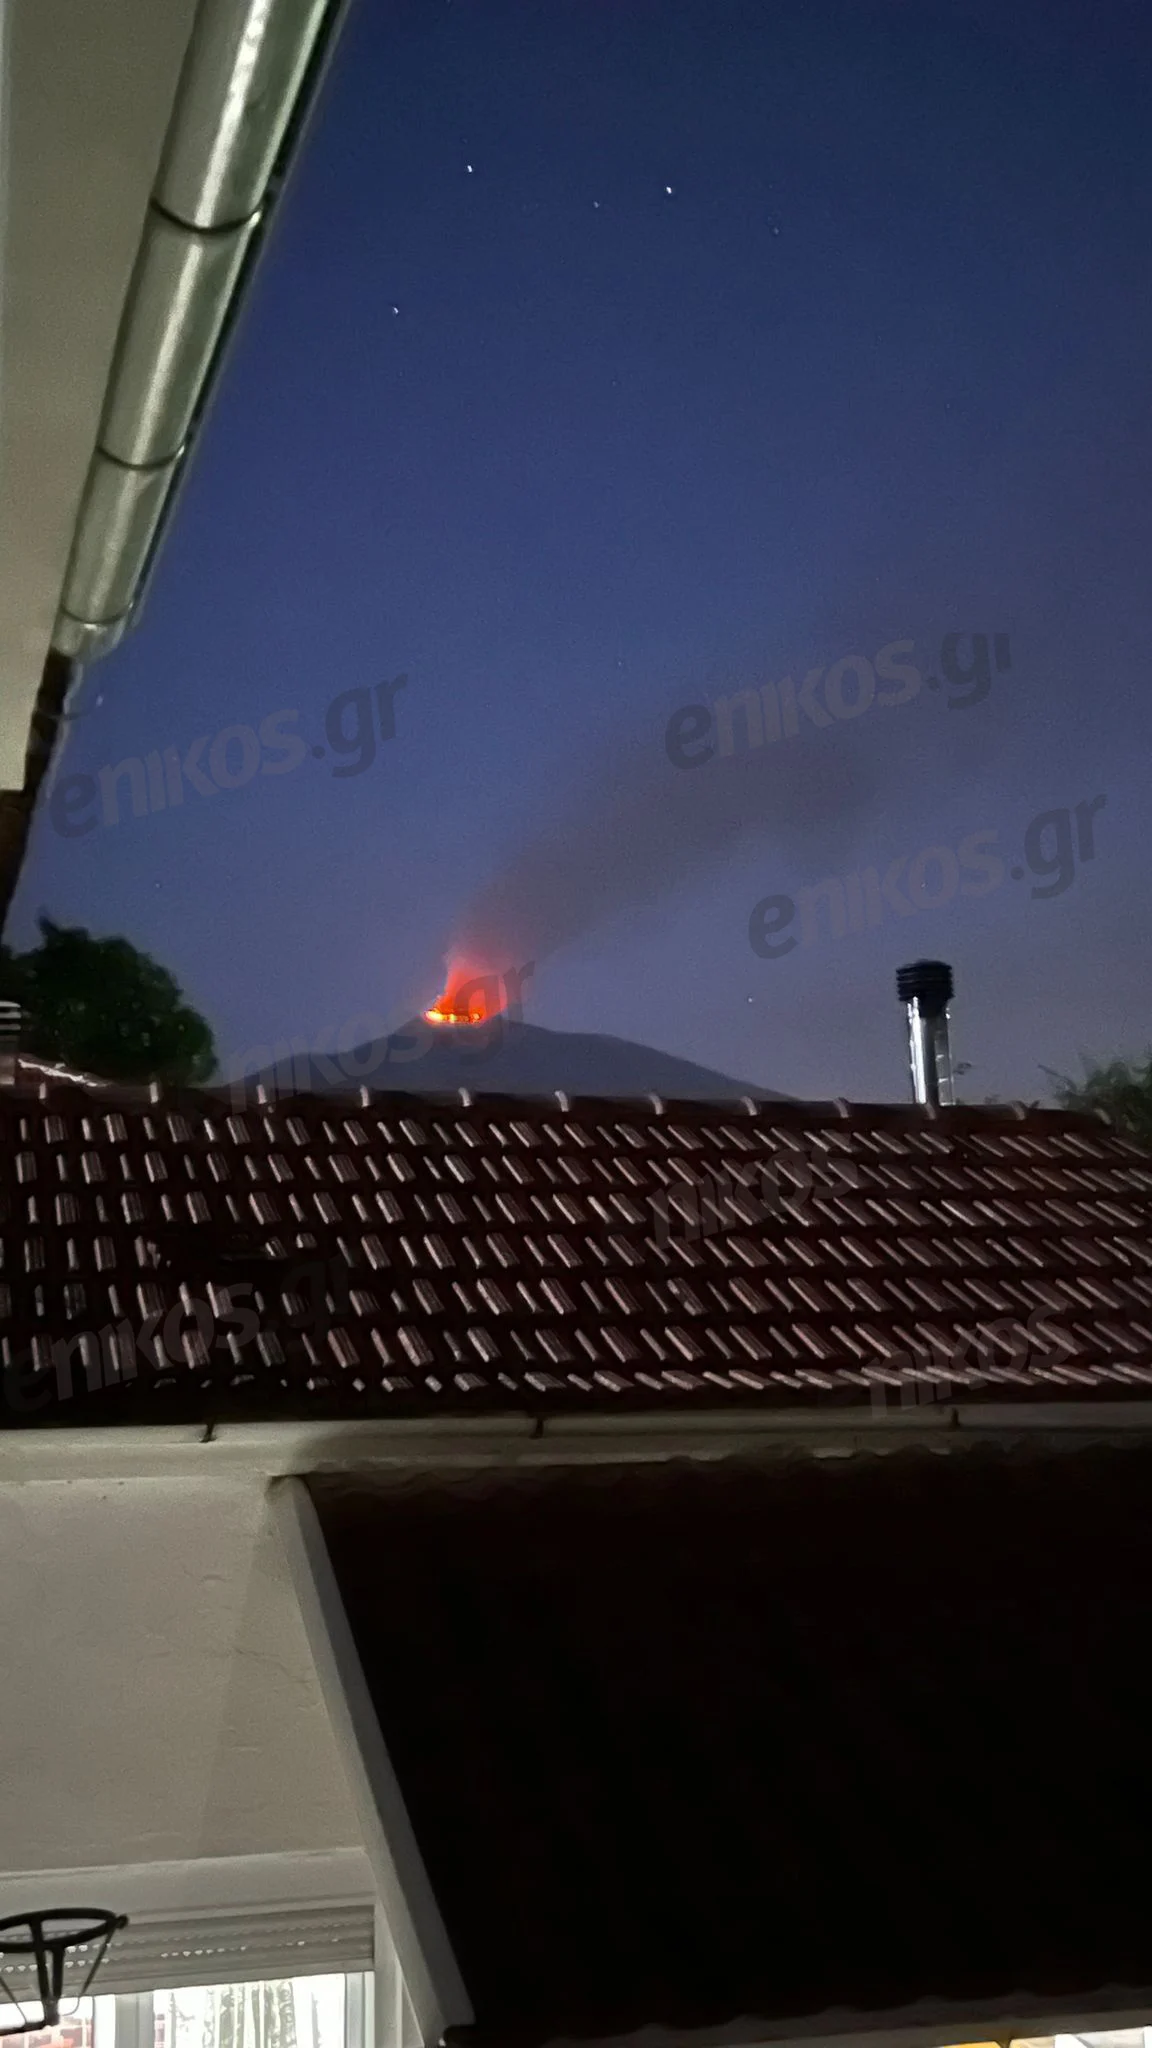 Δράμα: Φωτιά στην περιοχή Πανόραμα – ΦΩΤΟ